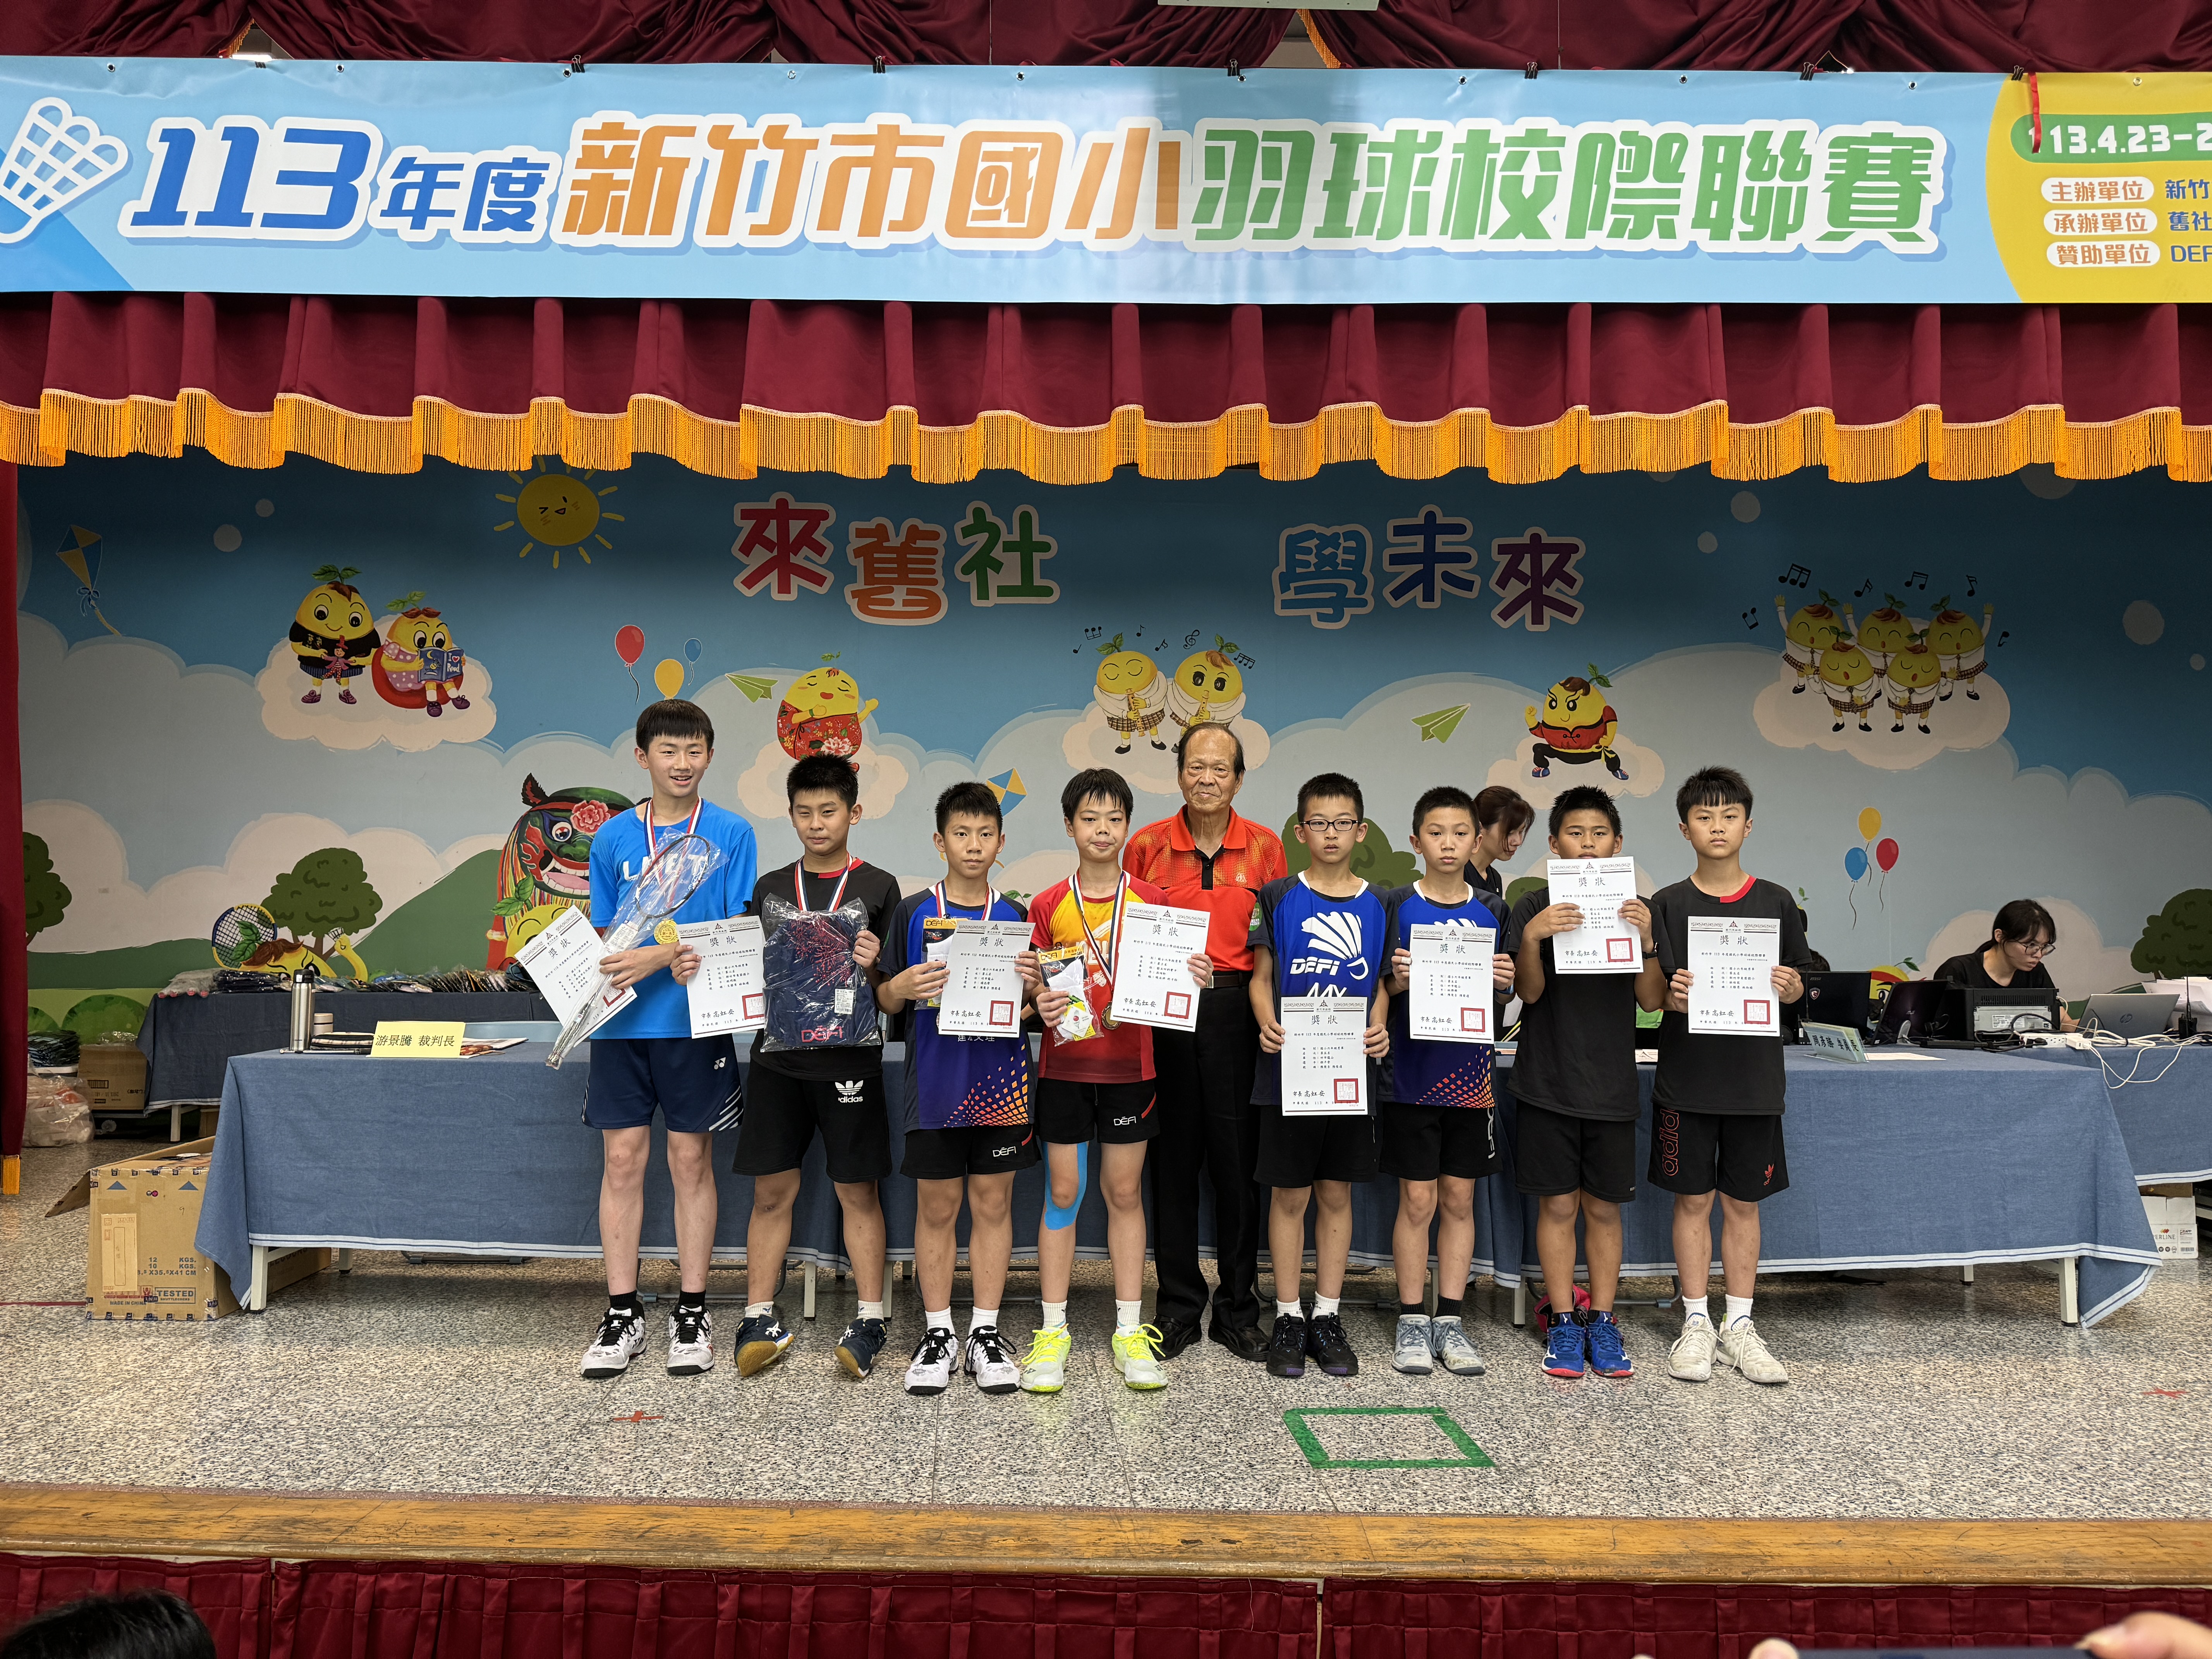 賀本校六年7班徐尚安榮獲113年度新竹市國小羽球校際聯賽第一名活動照片